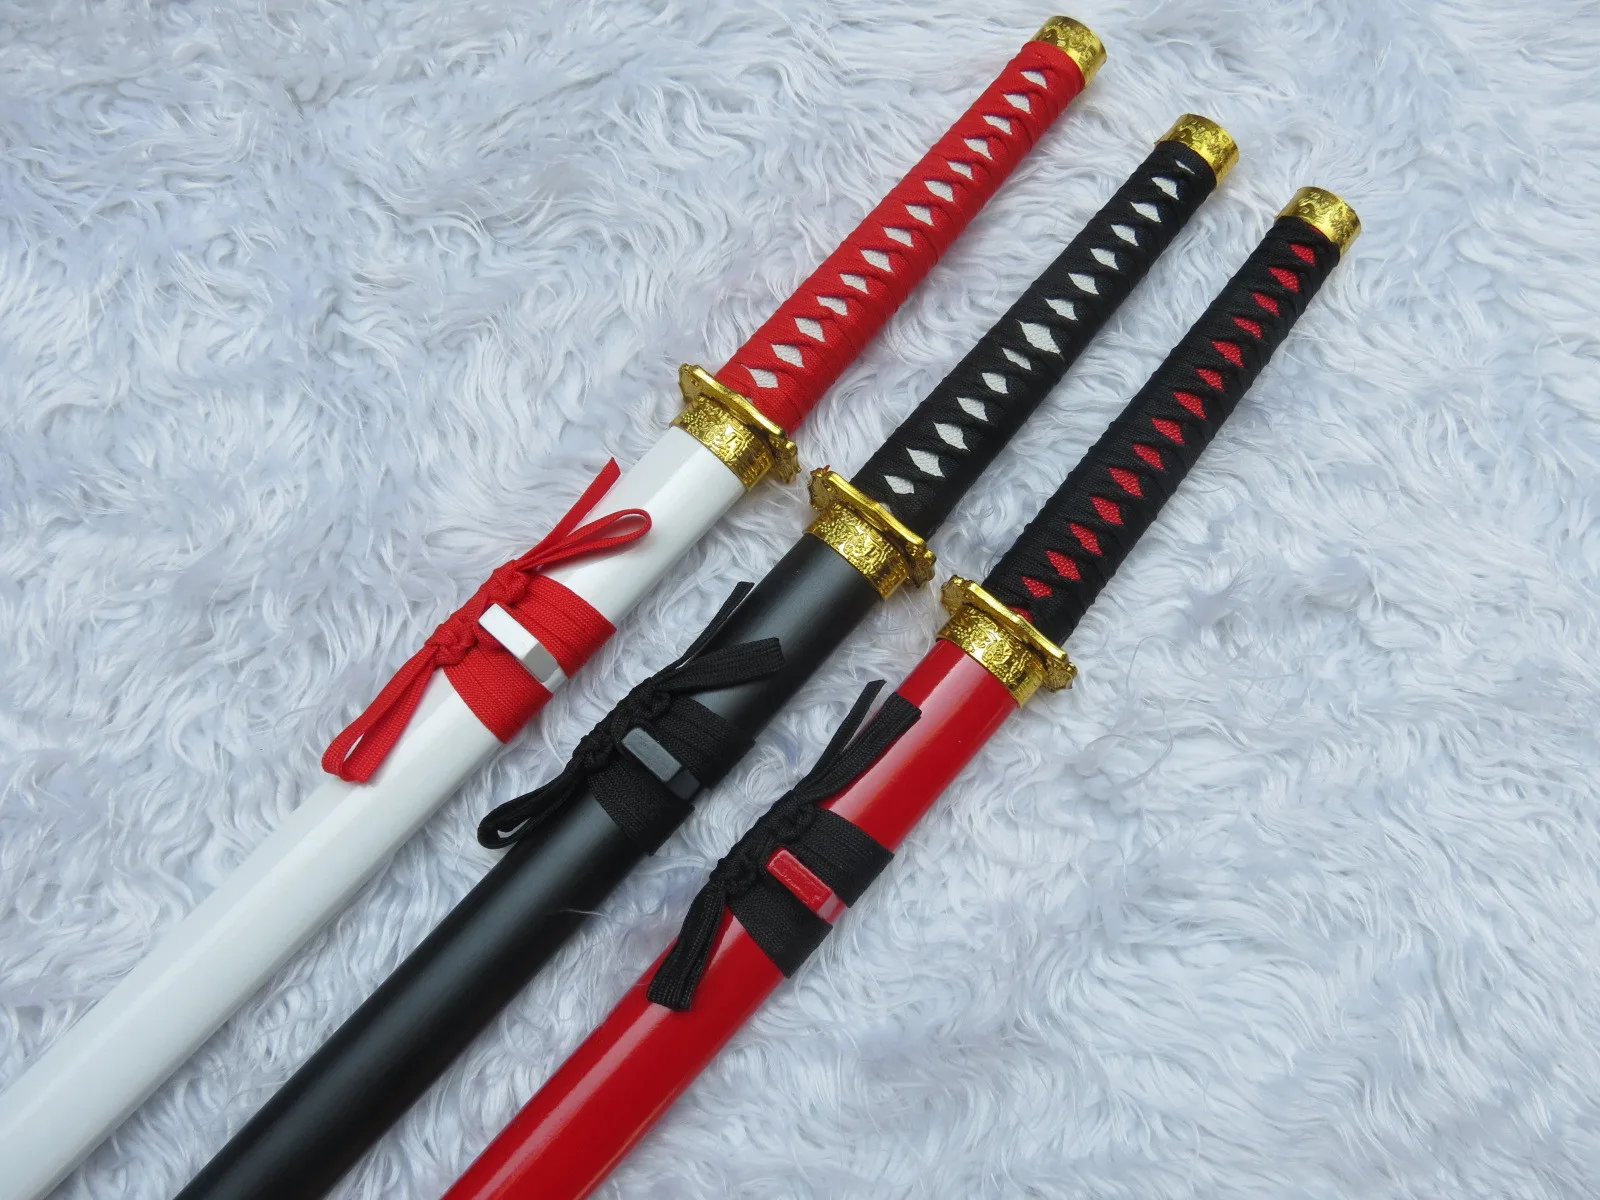 Косплей деревянный меч оружие реквизит аниме периферийные 3 цвета моделирование Косплей Костюм сценический фестиваль деревянный реквизит меч оружие